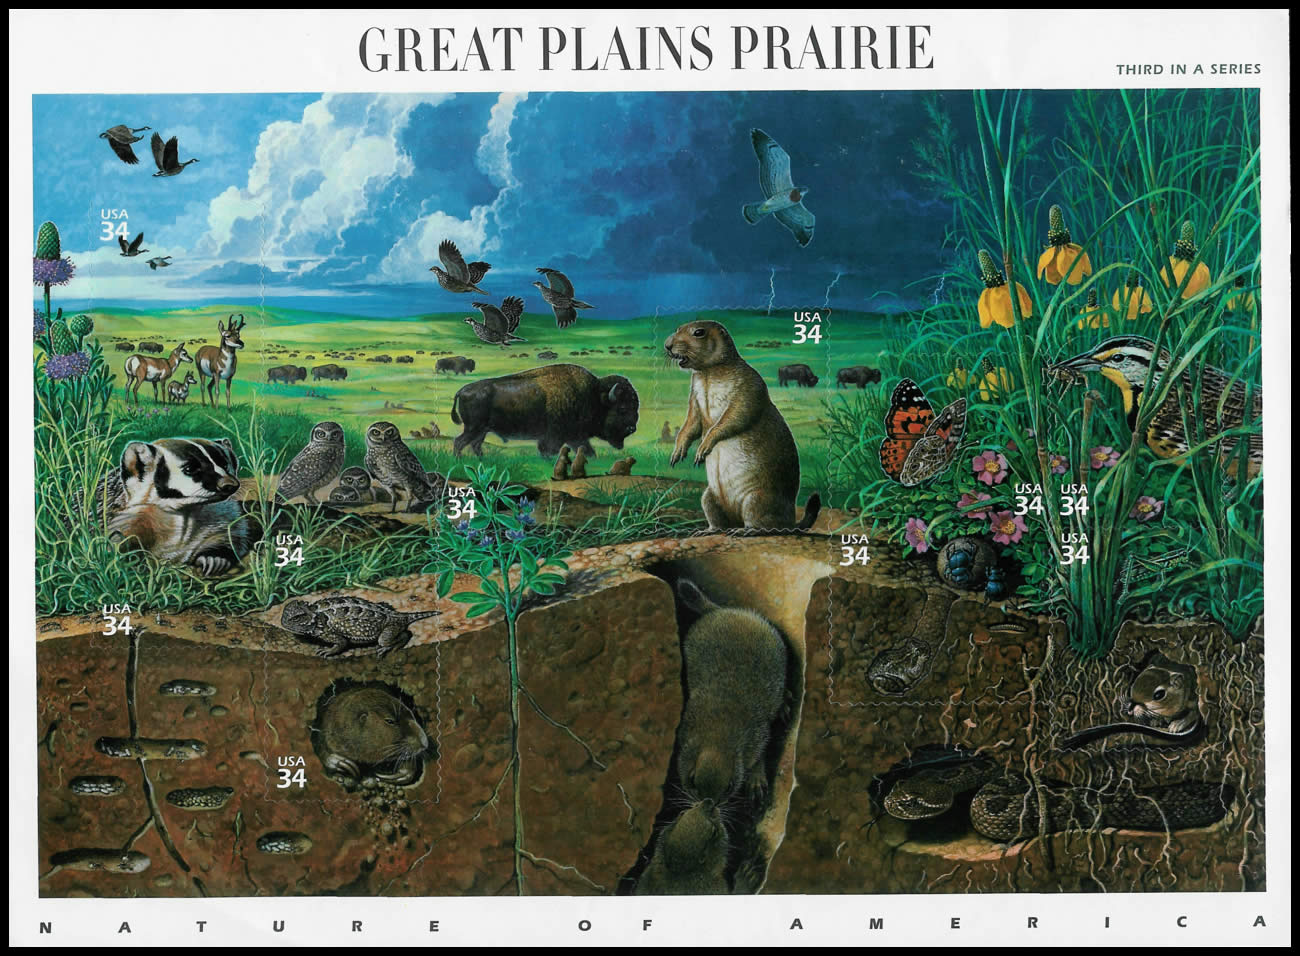 Bloque de 10 sellos todos de 34 centavos, representando las "Grandes planicies de la pradera" americana. En el angulo inferior izquierdo hay un nido completo de Pogonomyrmex occidentalis. Estados Unidos, 2000